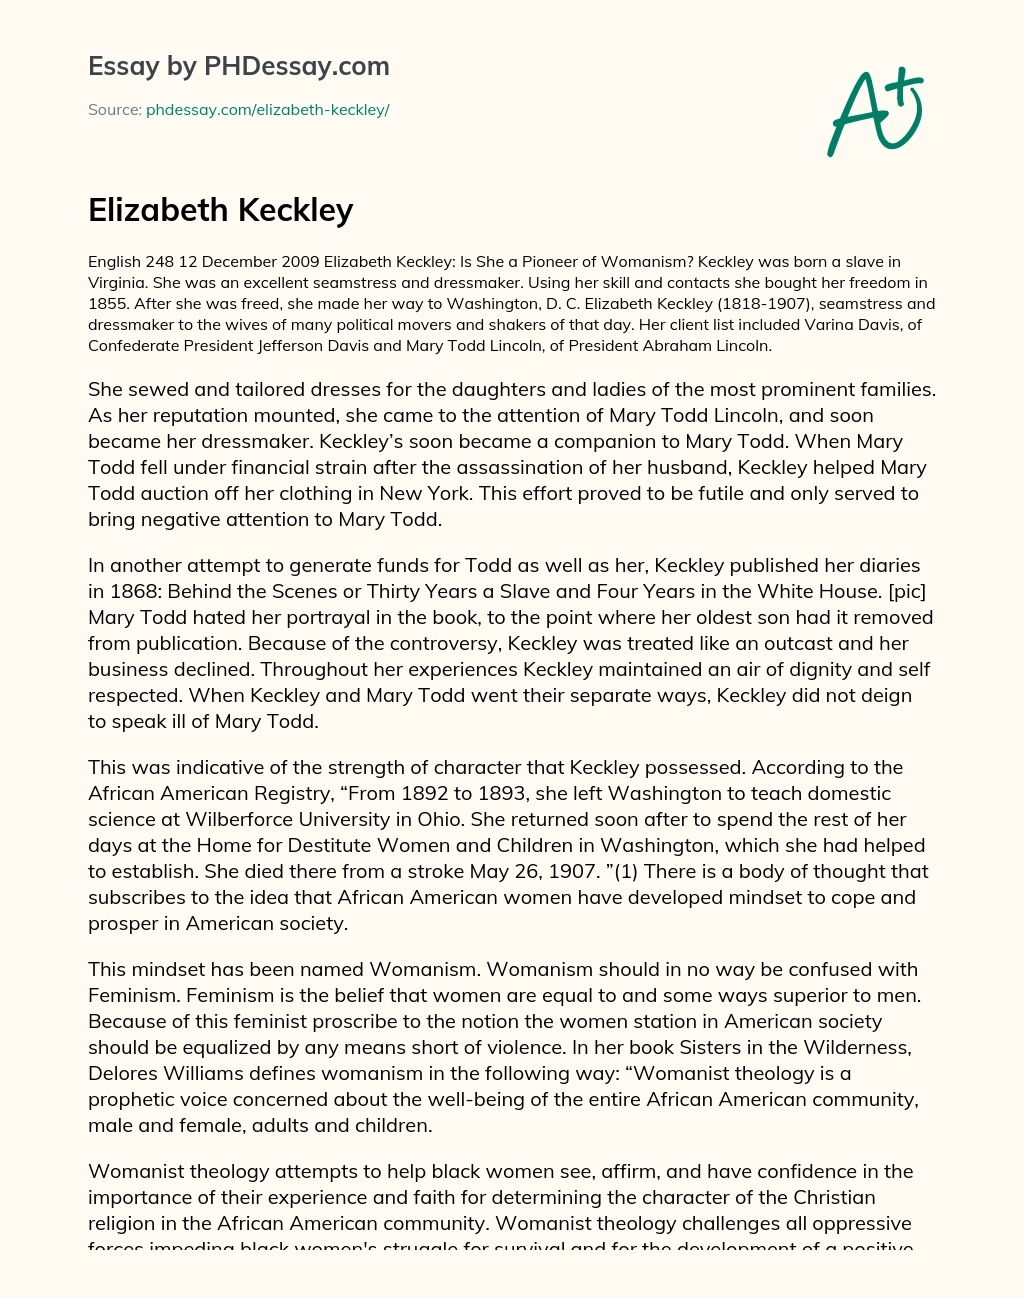 Elizabeth Keckley essay